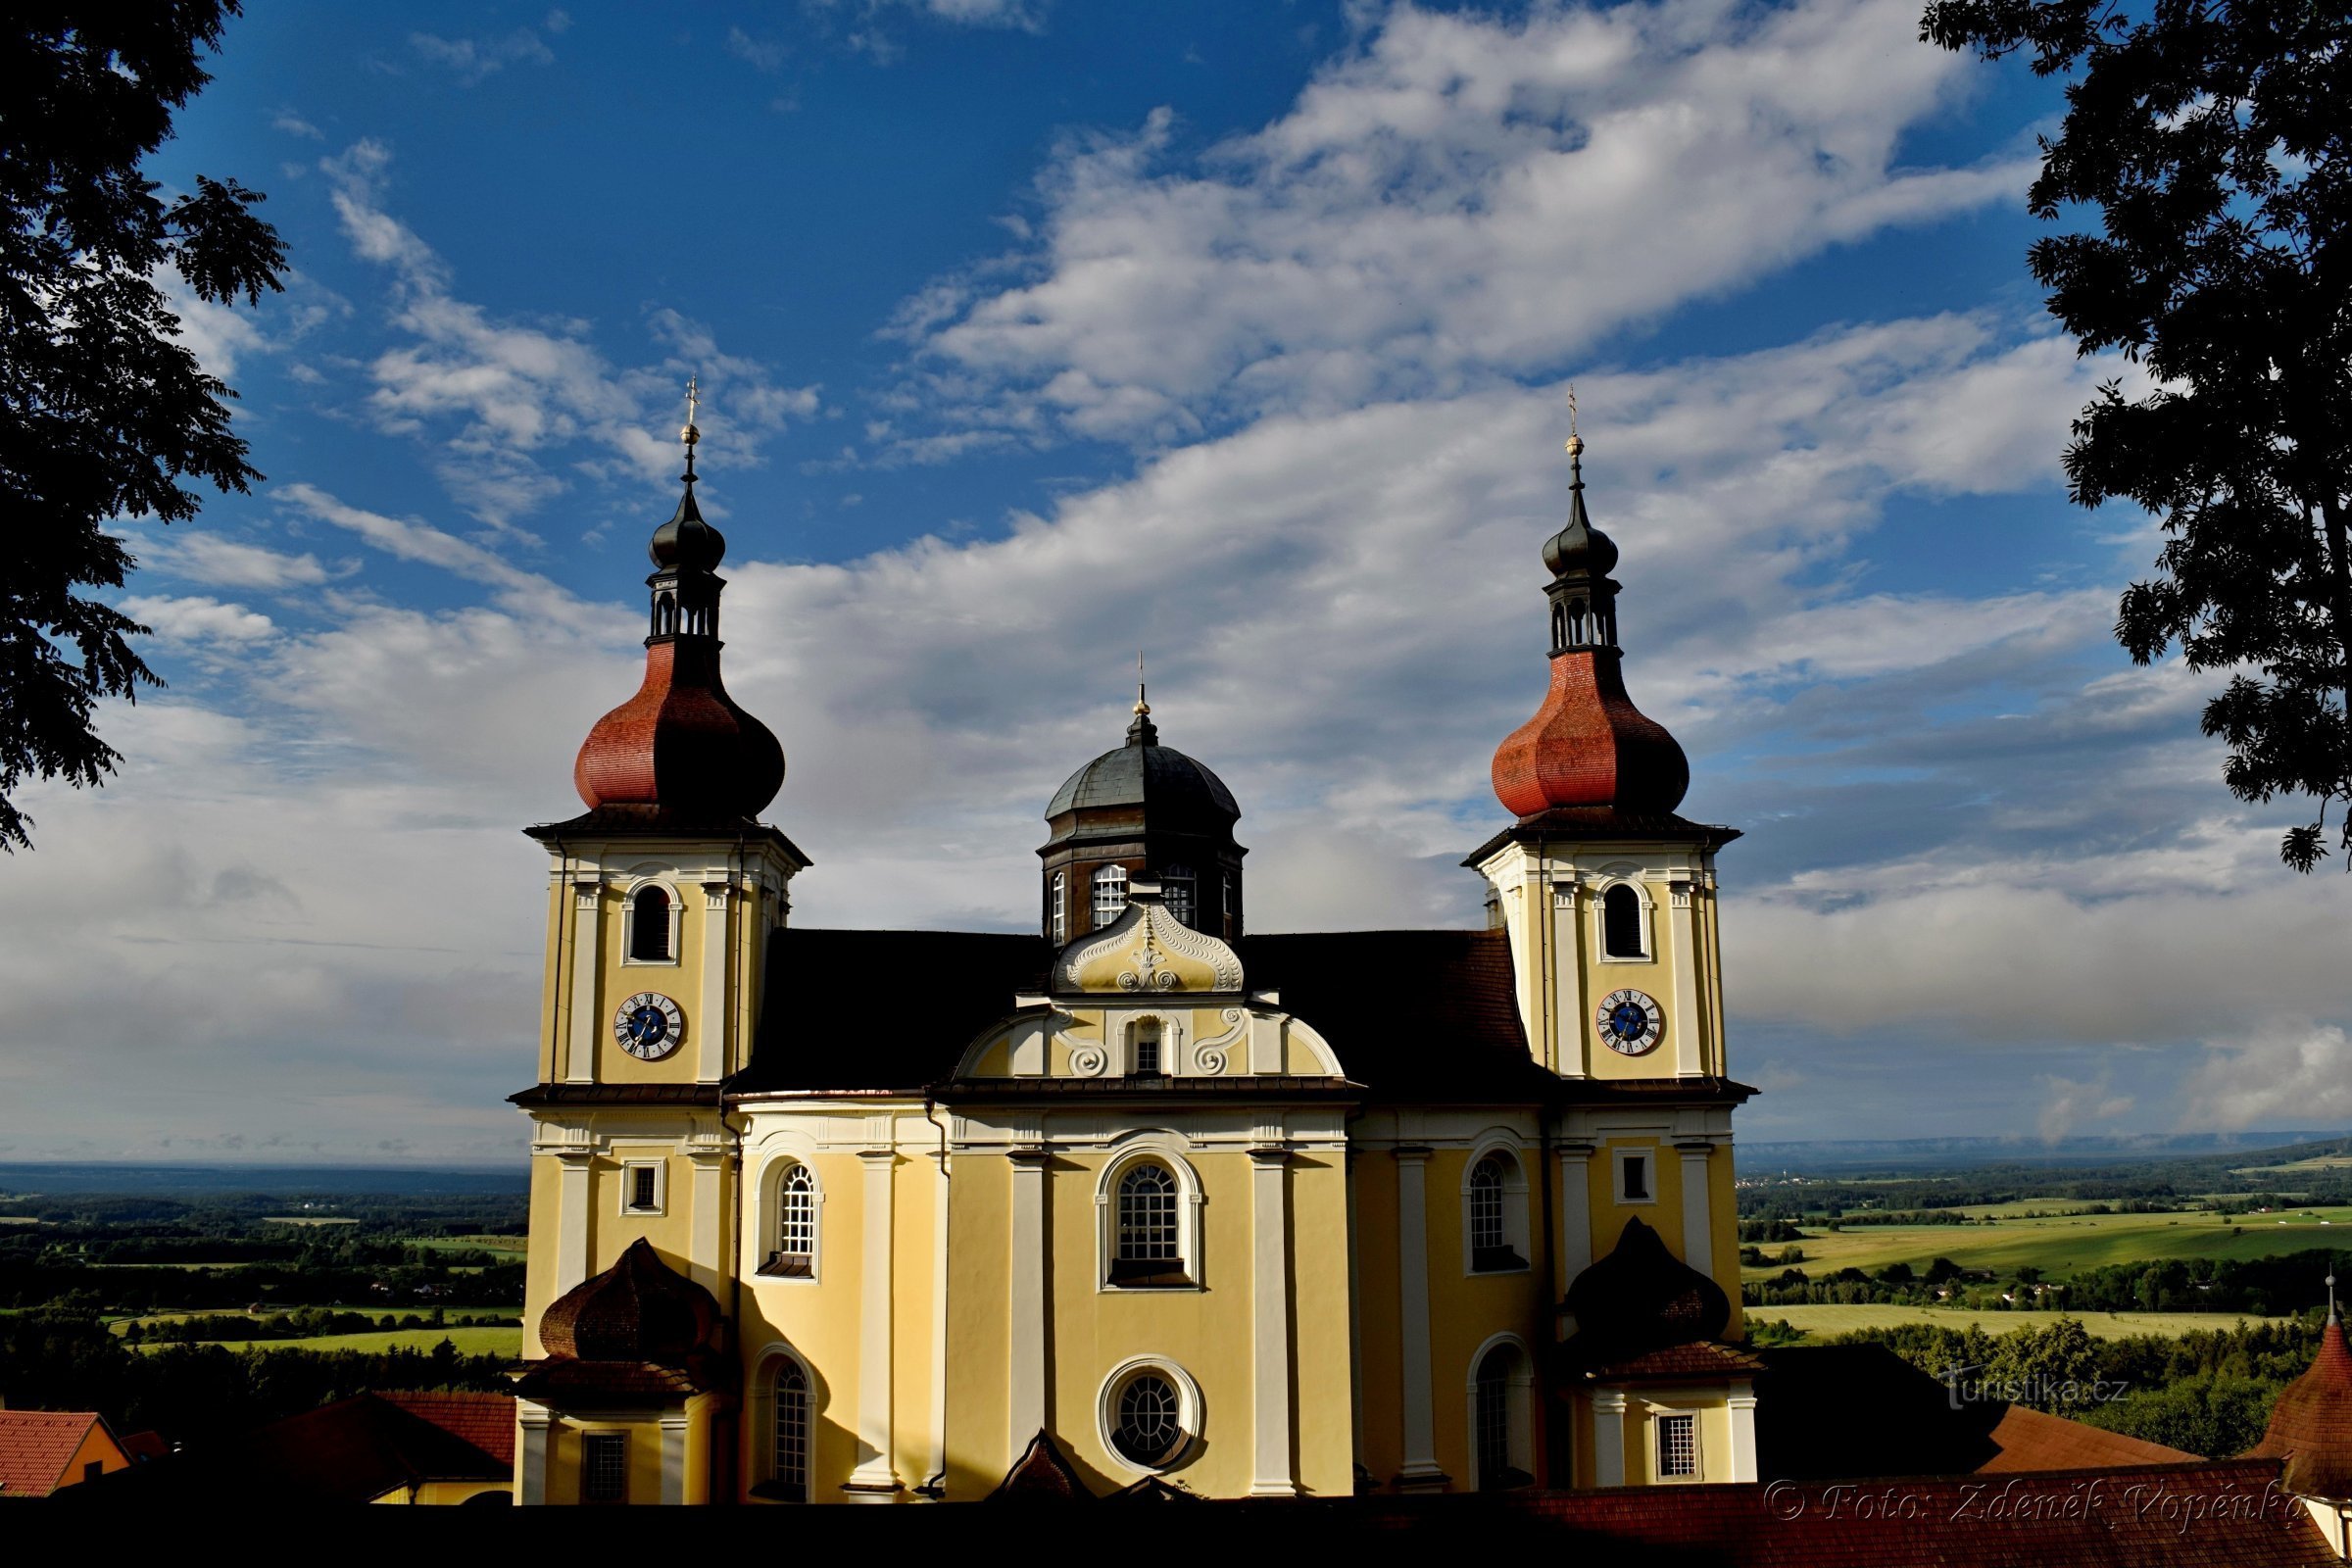 Pilgrimage church in Dobrá Voda.